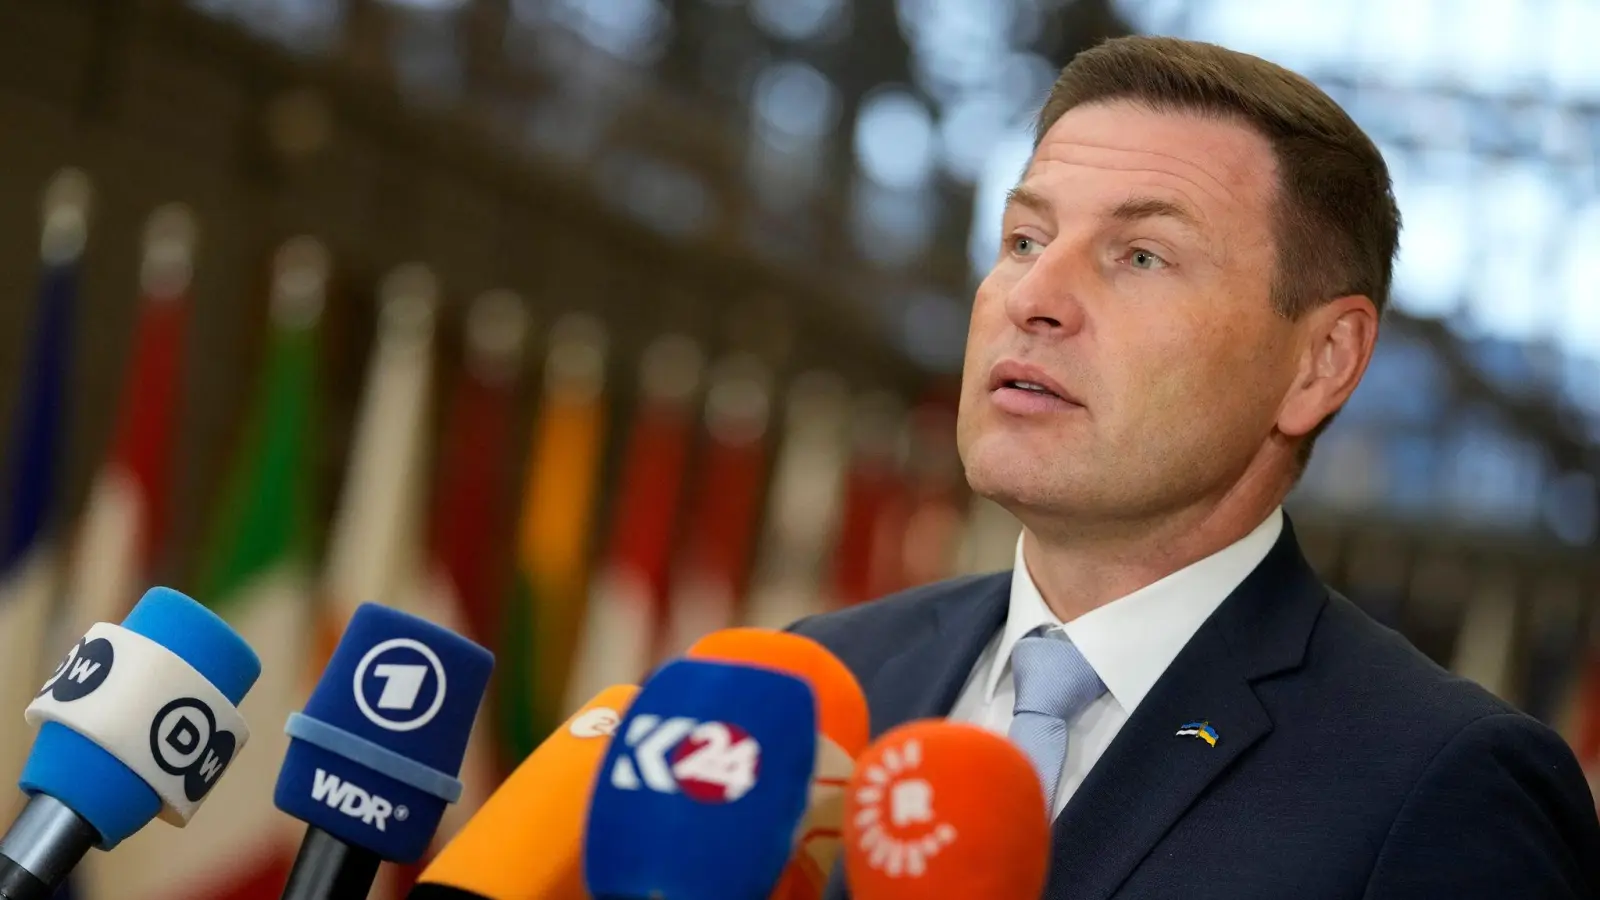 Estlands Verteidigungsminister Hanno Pevkur äußert sich zum EU-Munitionsplan für die Ukraine. (Foto: Virginia Mayo/AP)